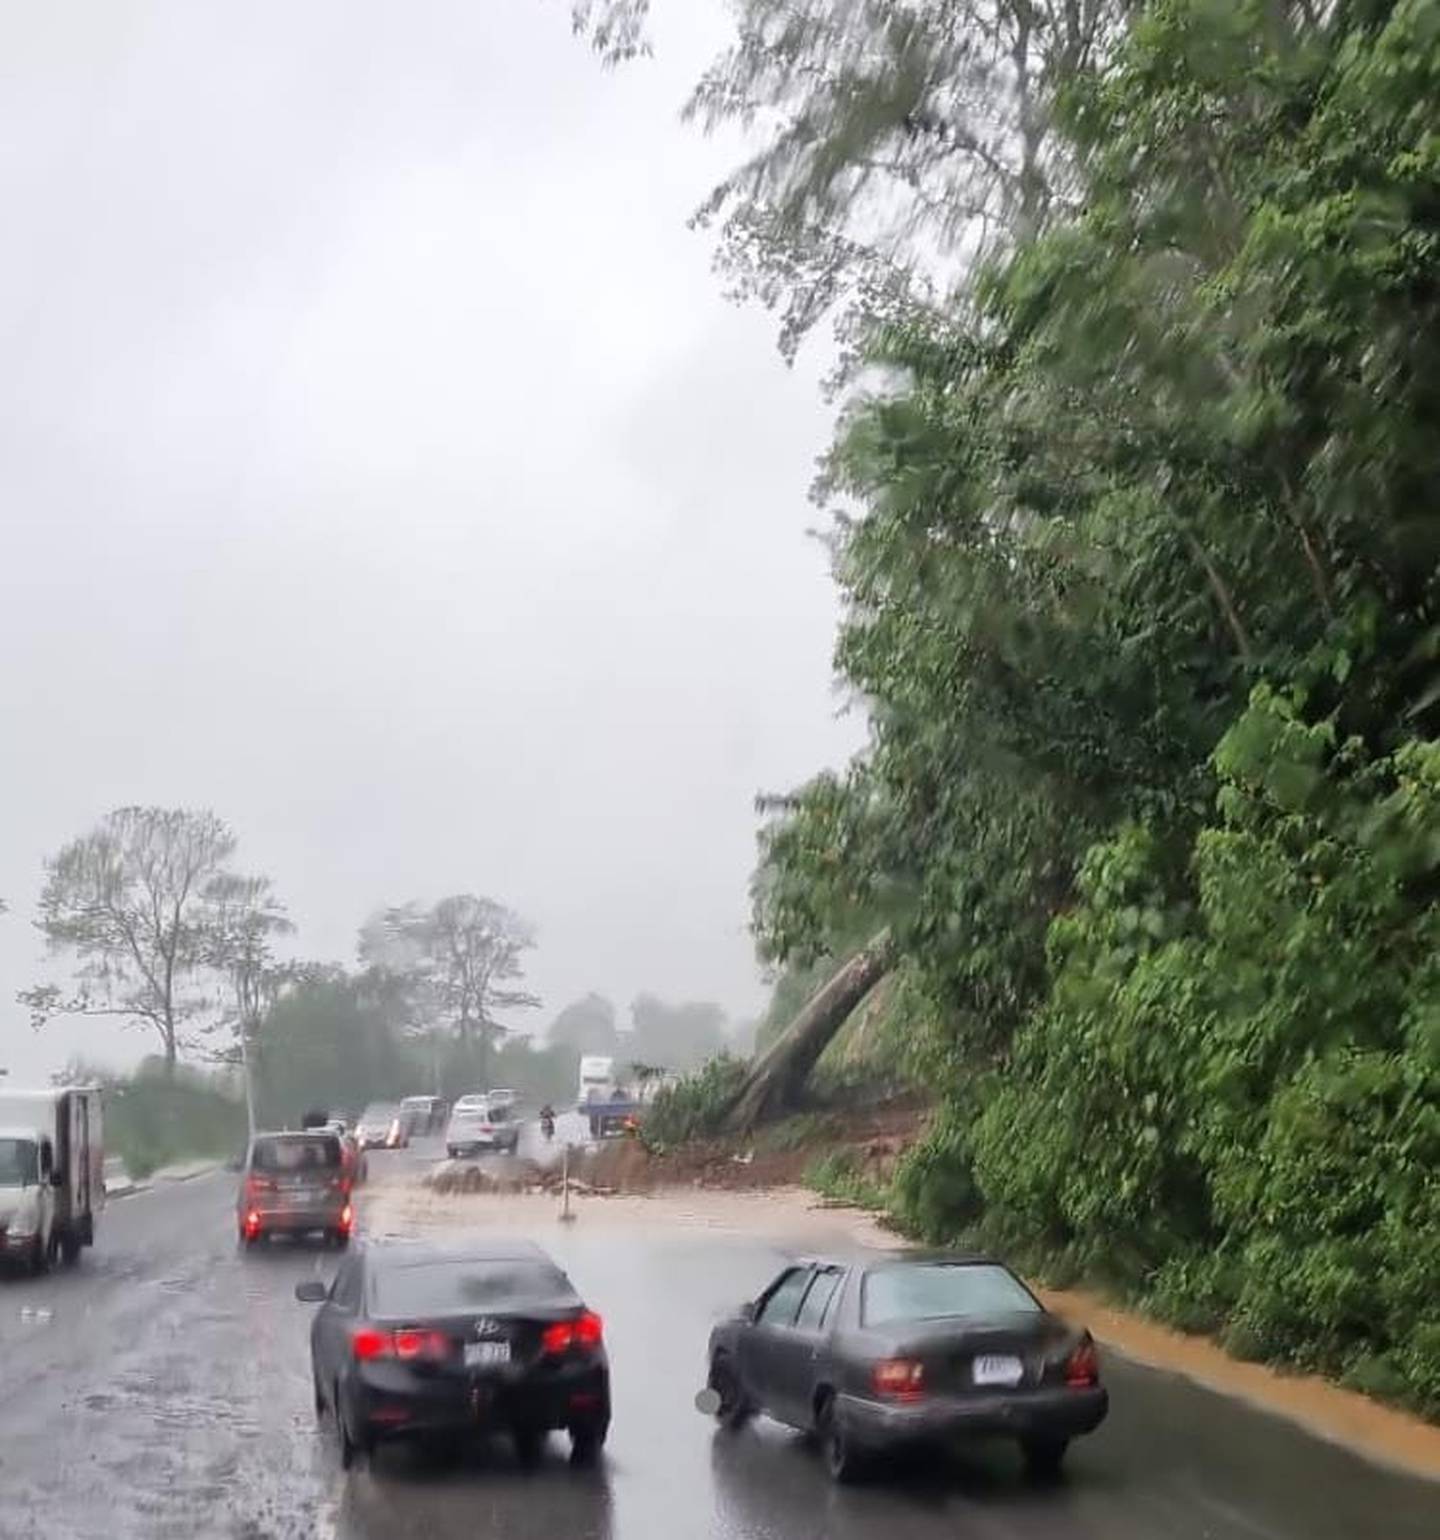 Cerca del puente del río Toro Amarillo, en Guápiles, un arbol cayó sobre la ruta 32 y afectó el paso por uno de los carriles esta mañana. Las autoridades piden precaución a conductores en el Caribe. Foto: Reiner Montero.